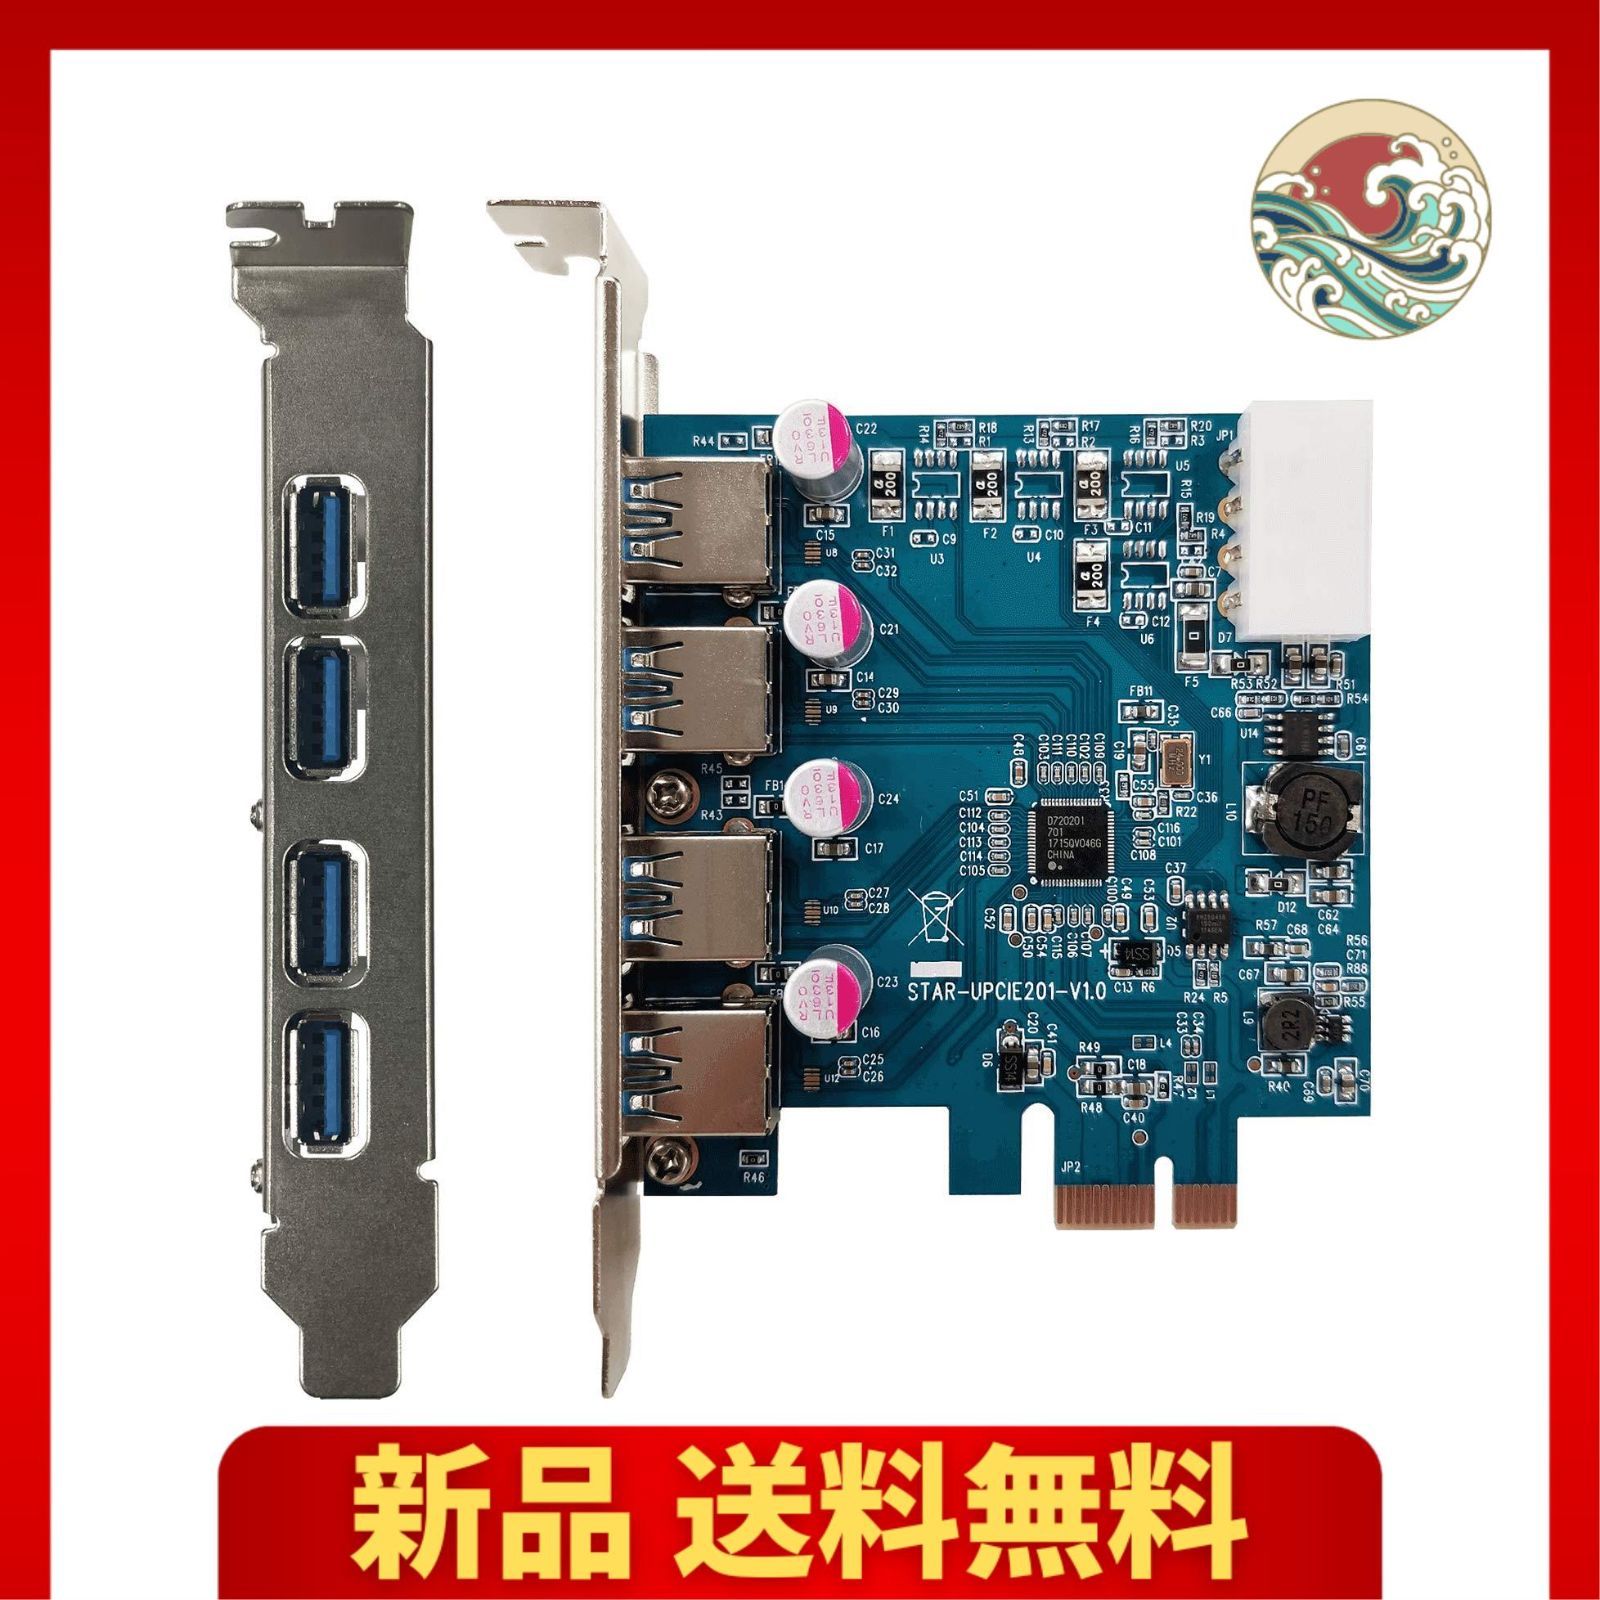 玄人志向 Renesus μPD720201搭載 USB3.0 Type-A X4 インターフェースボード (PCI-Express x1接続) USB3.0RA-P4-PCIE